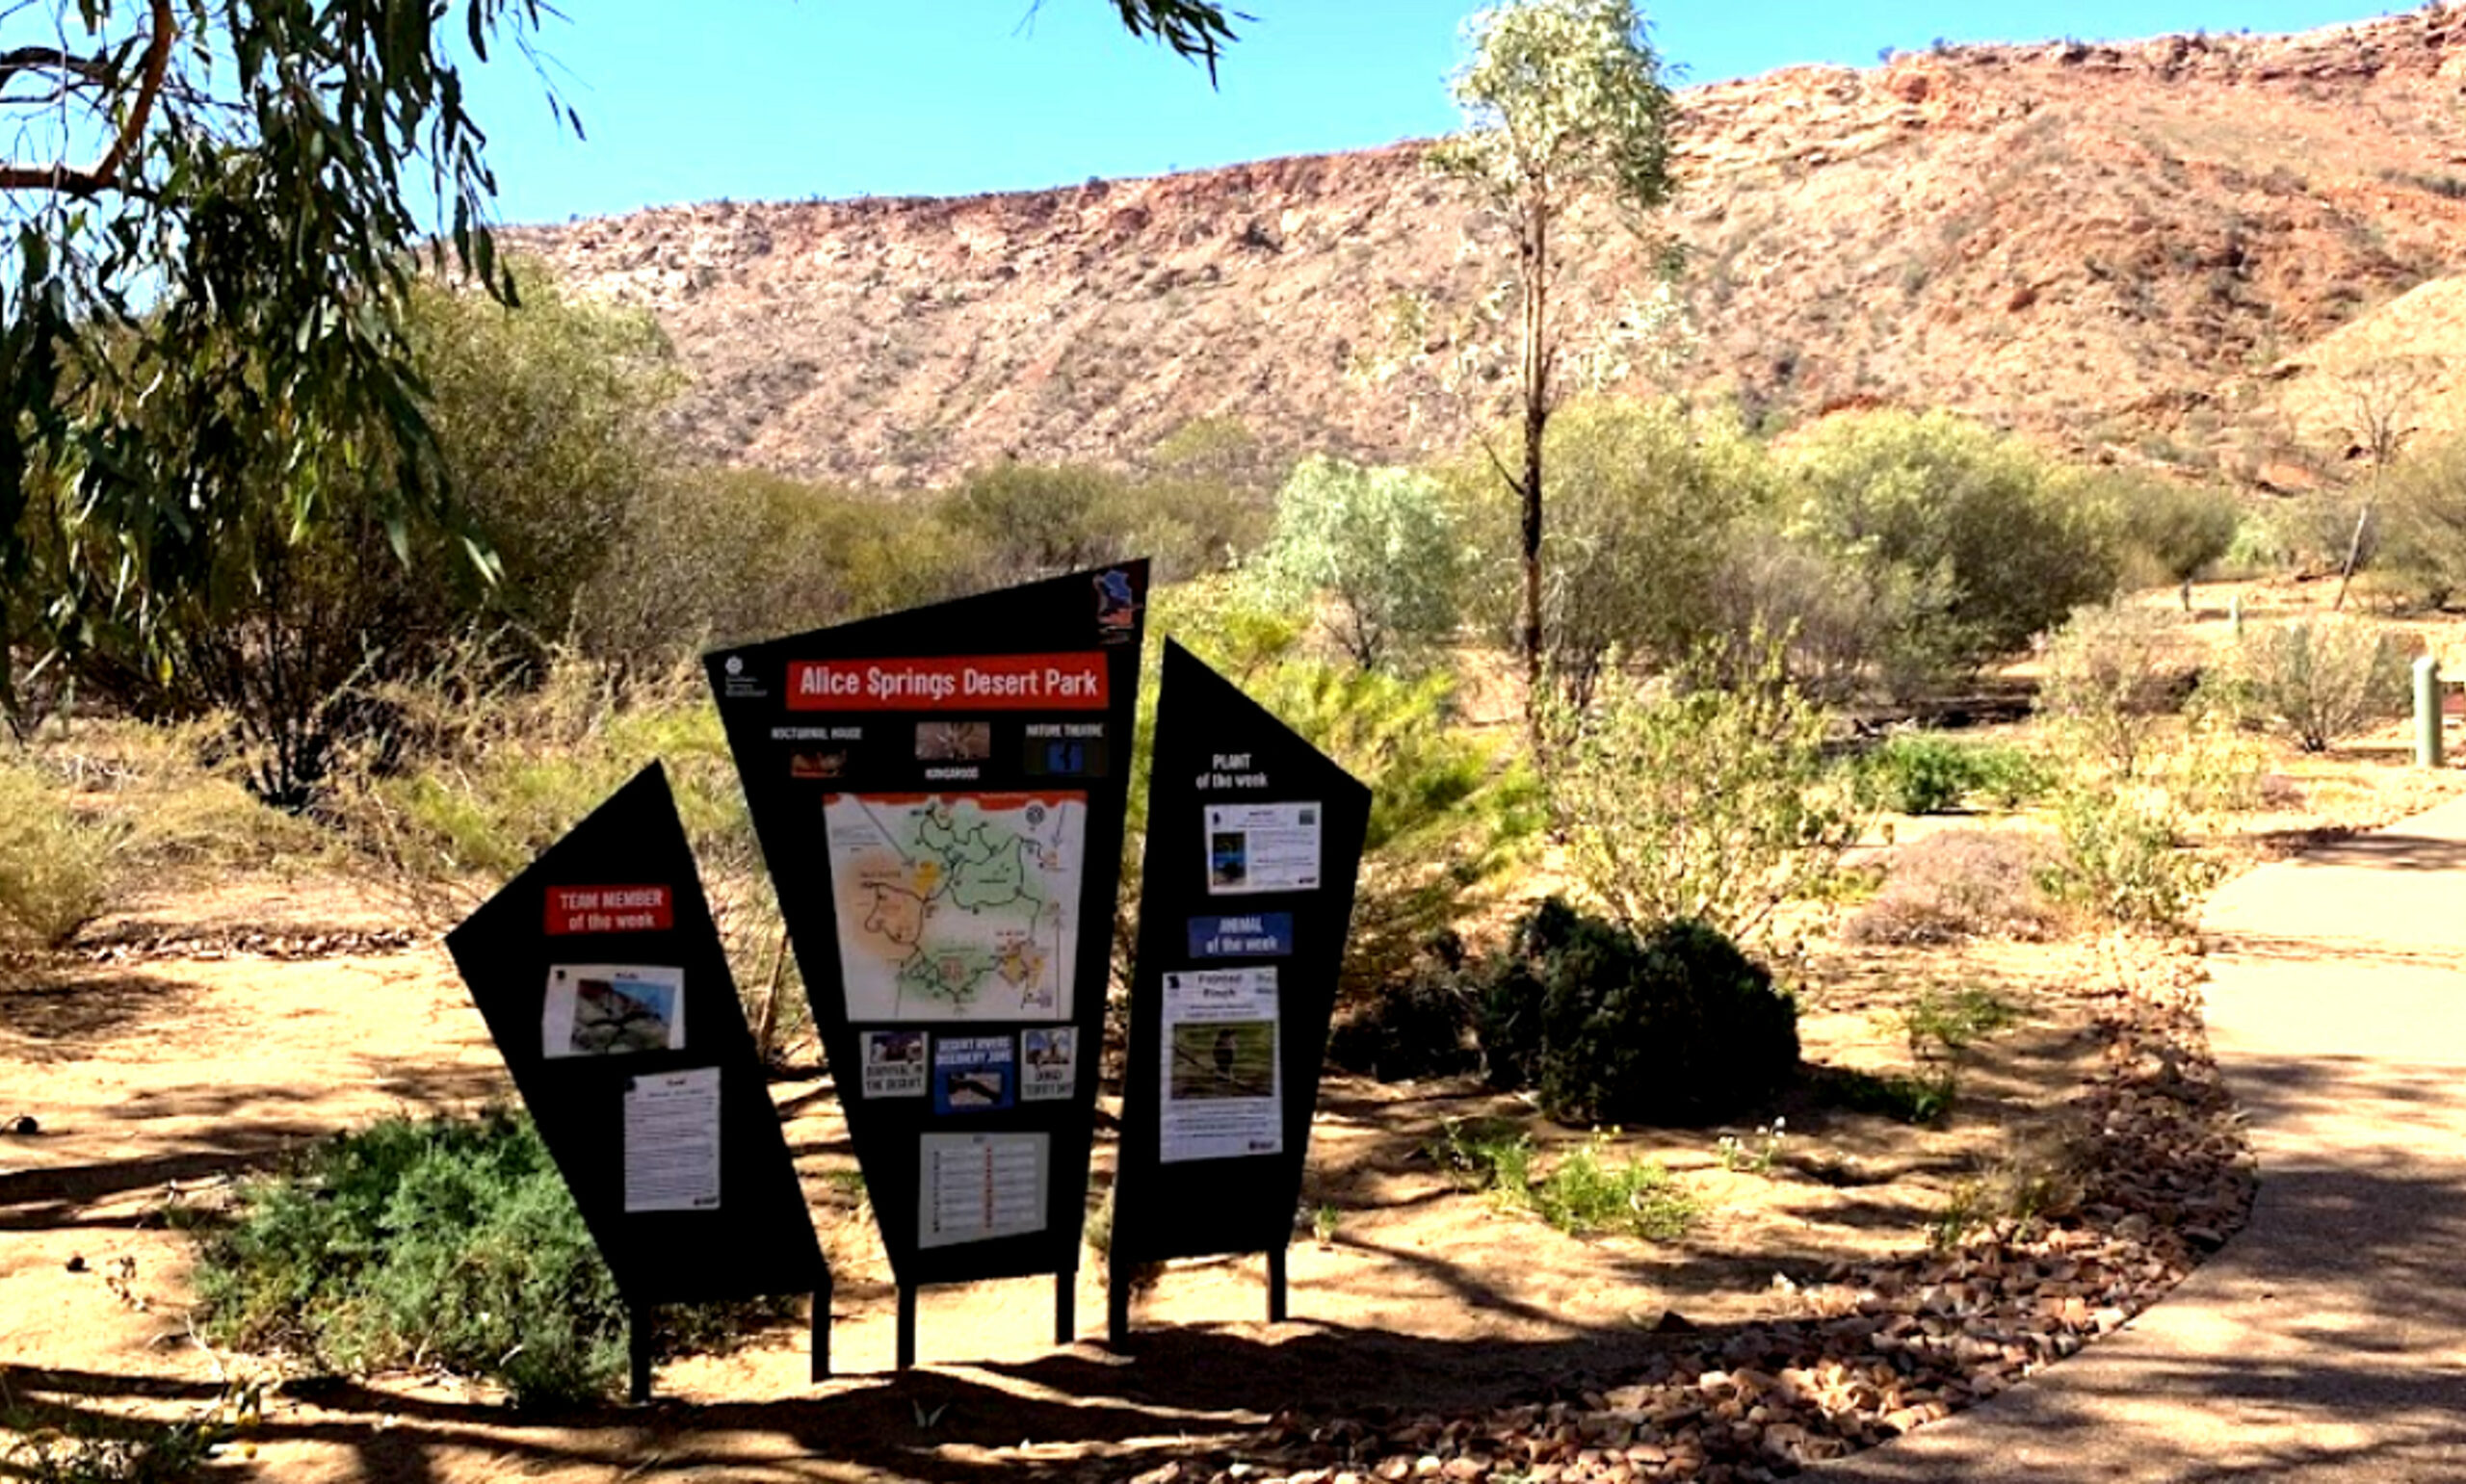 Pustinjski park Alice Springs